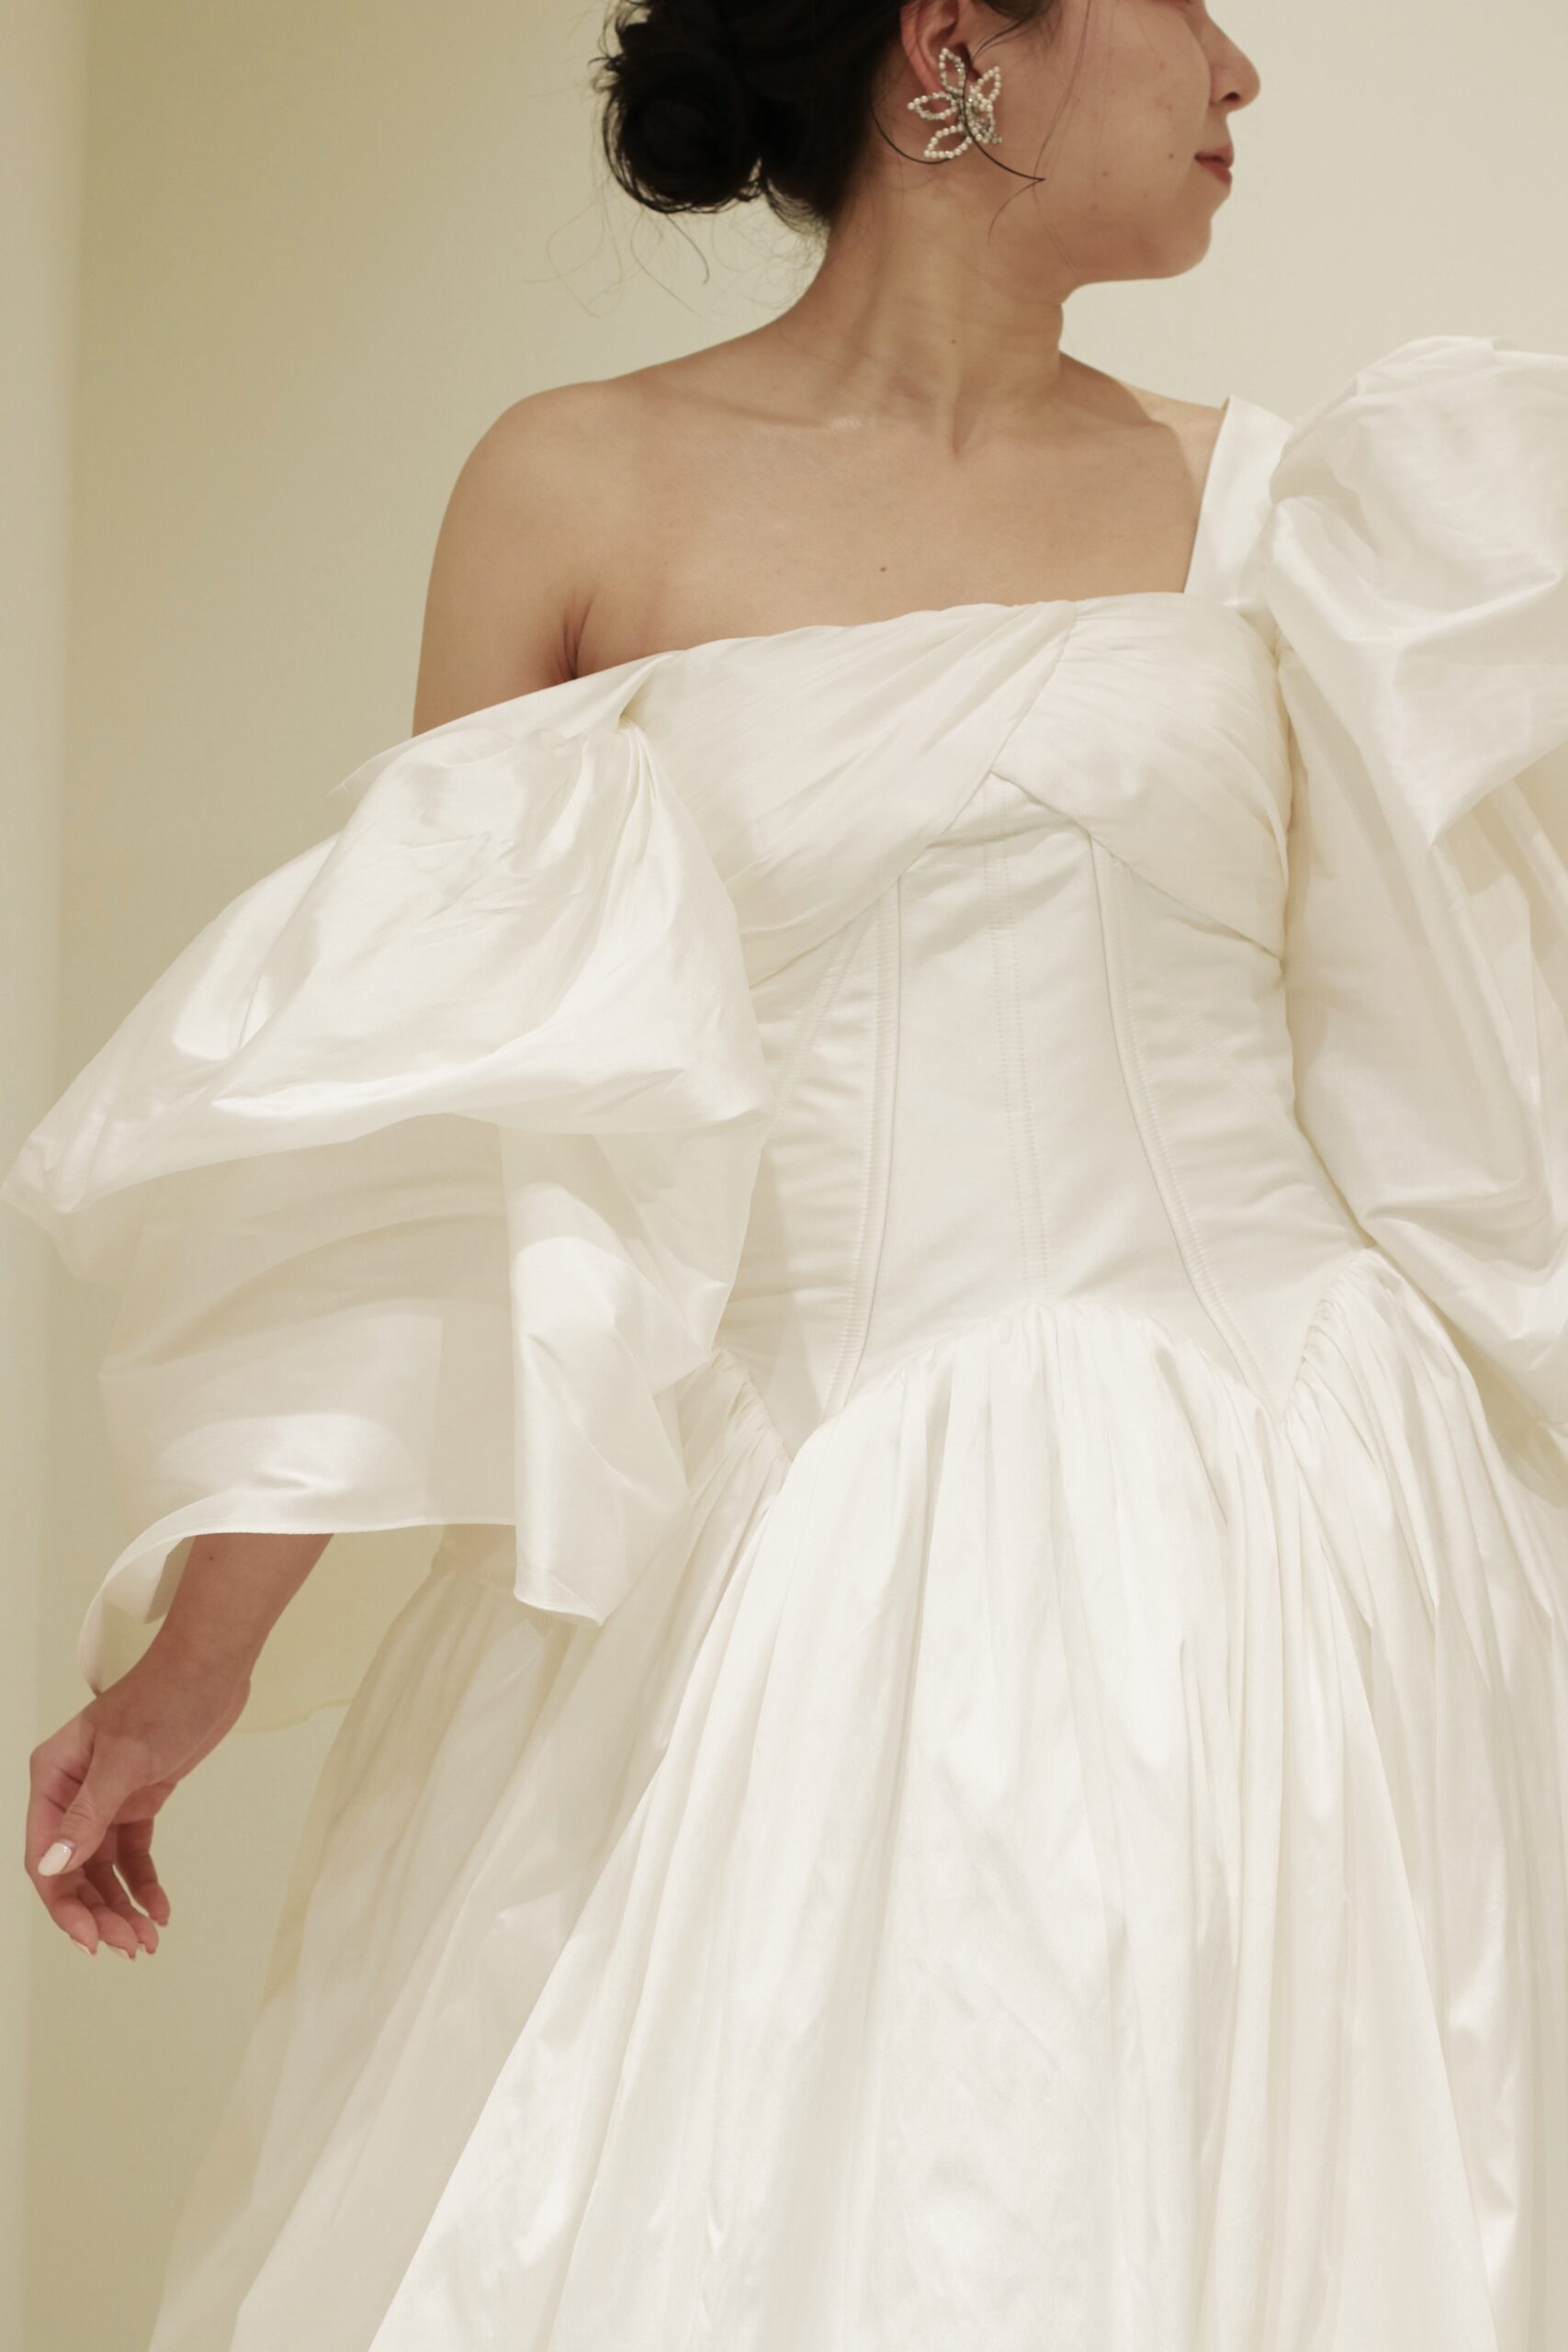 人気ショップザトリートドレッシングアディション店に新作で入荷した東京エリアの花嫁におすすめの4WAYのショルダーのデザインが特徴的なドレスのご紹介